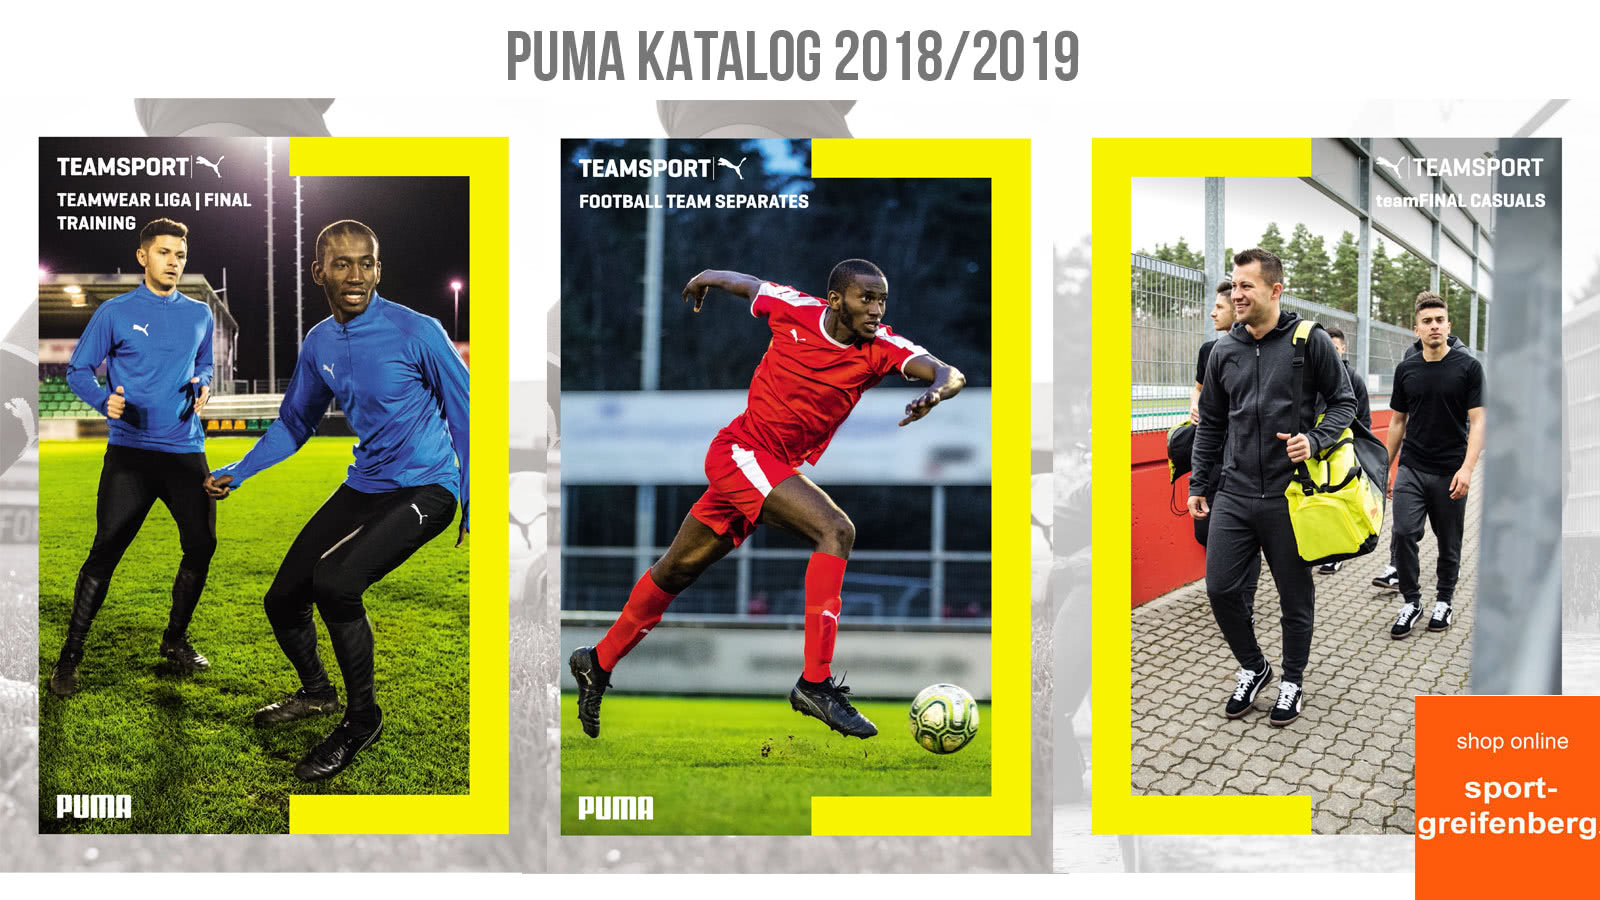 Der Puma Katalog 2018/2019 für den Fußball und Teamsport